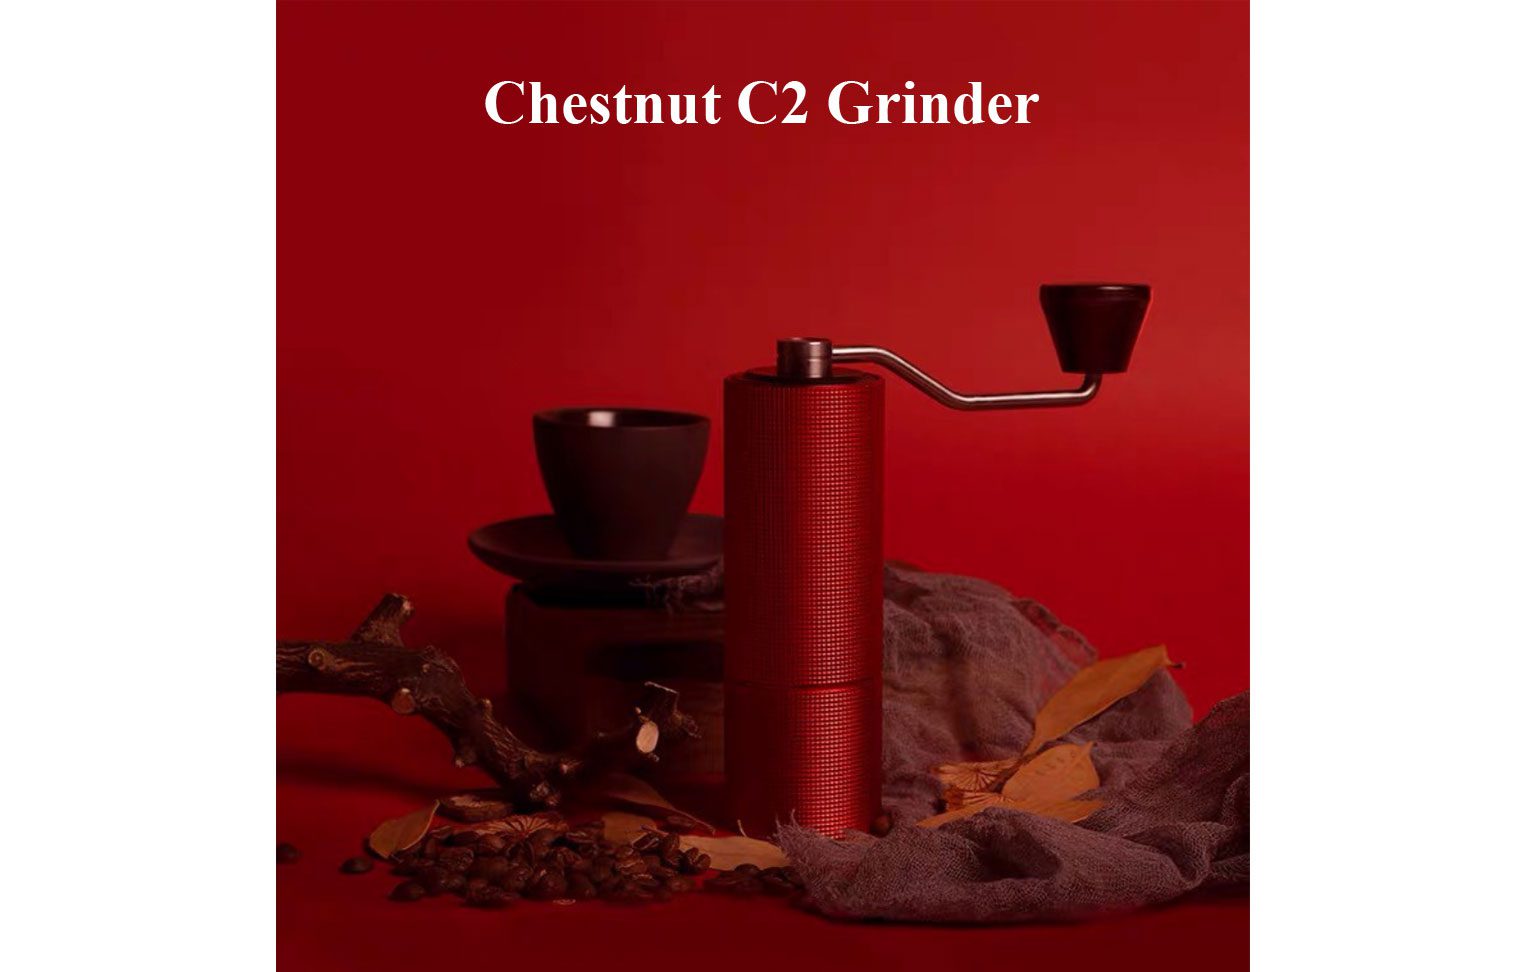 Timemore Chestnut C2 Grinder | Best Coffee Grinder | Home Brewing Machine